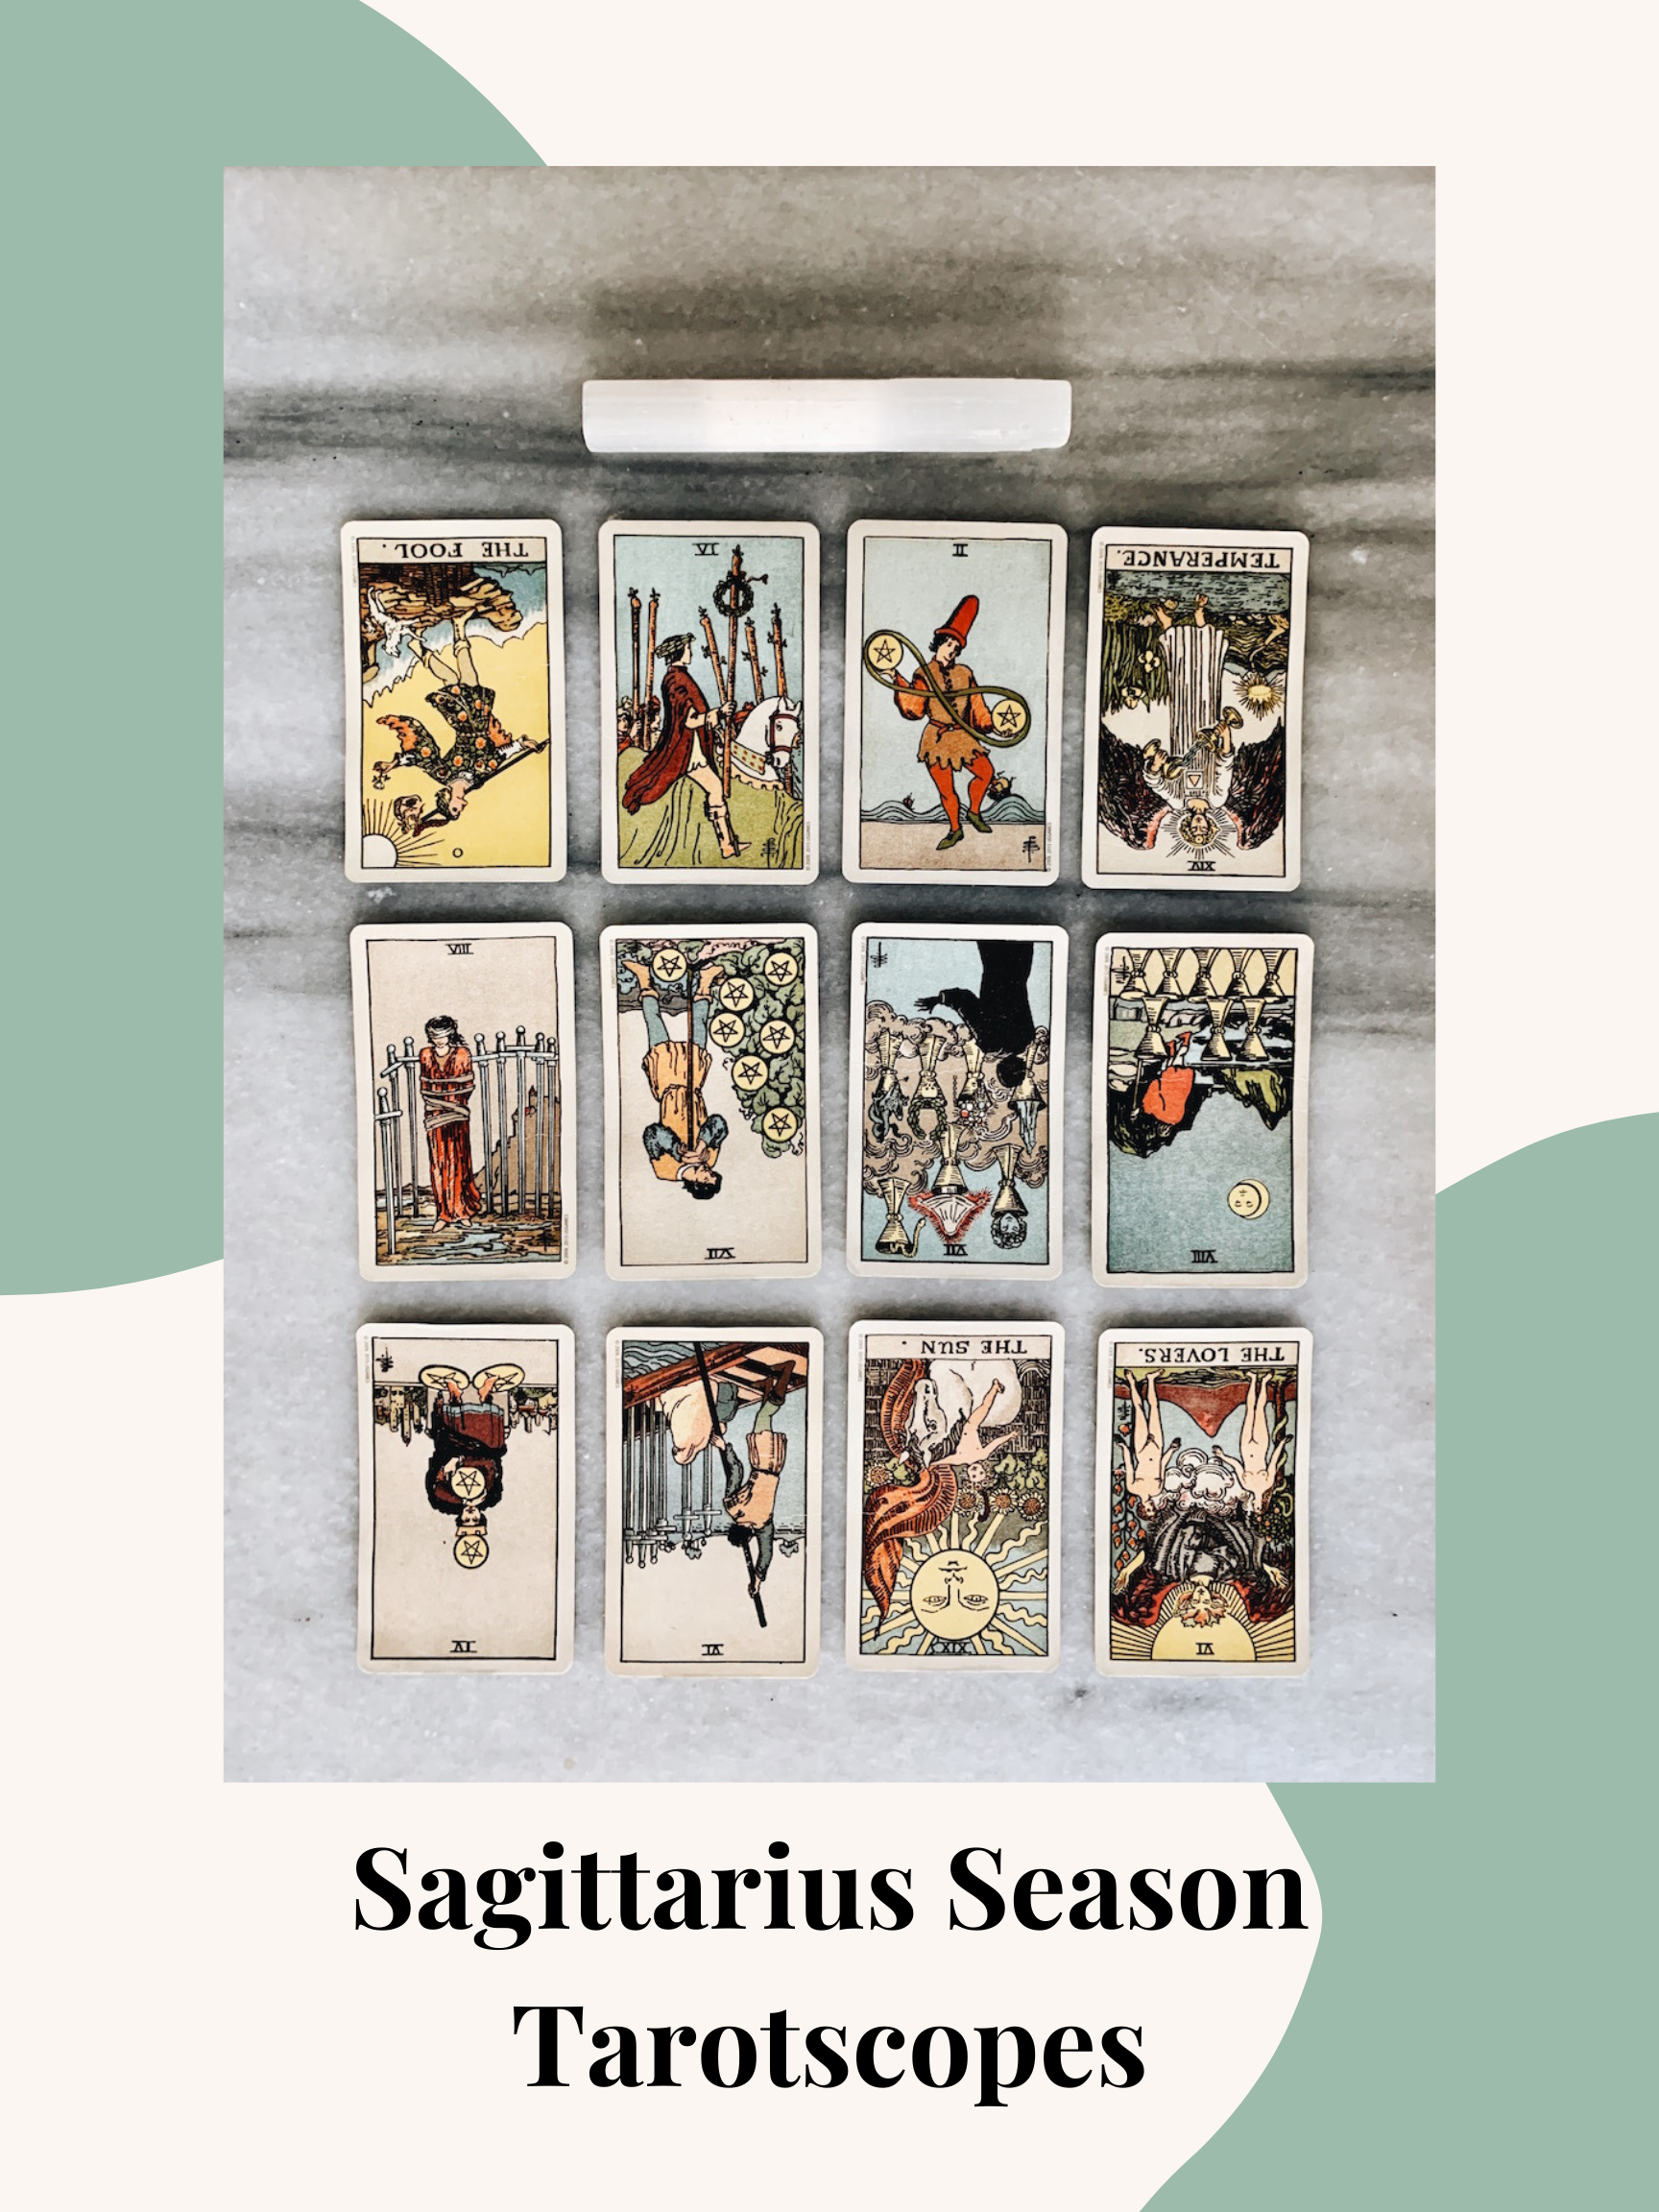 Sagittarius Season Tarotscopes 2020